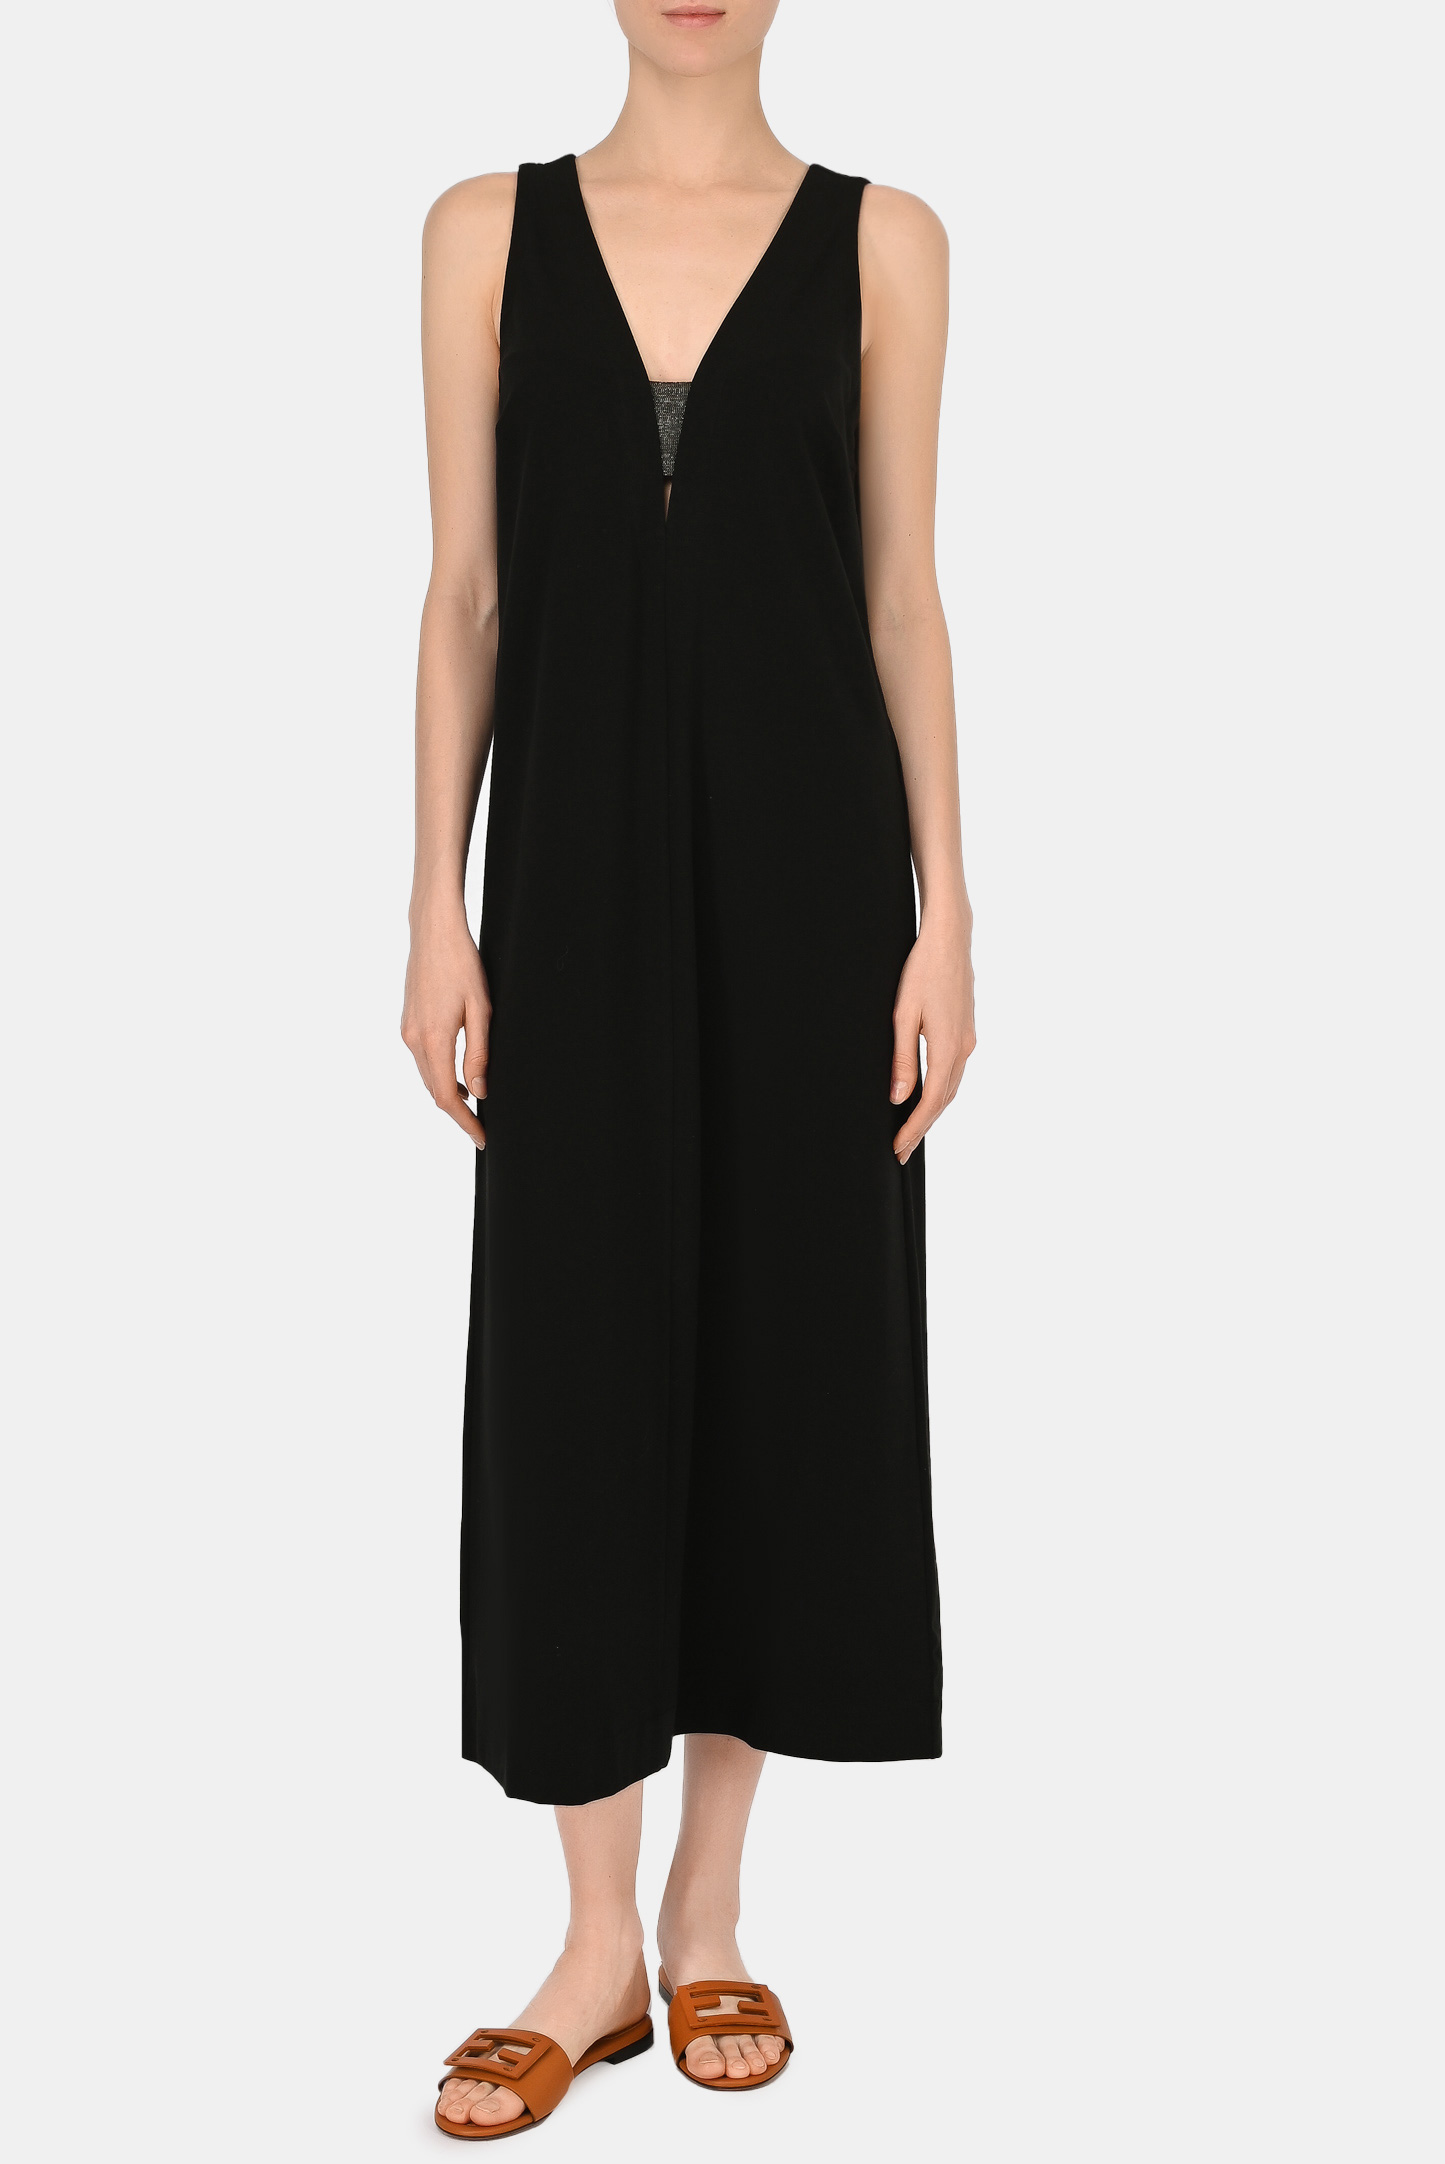 Платье BRUNELLO  CUCINELLI MH968ABM73, цвет: Черный, Женский